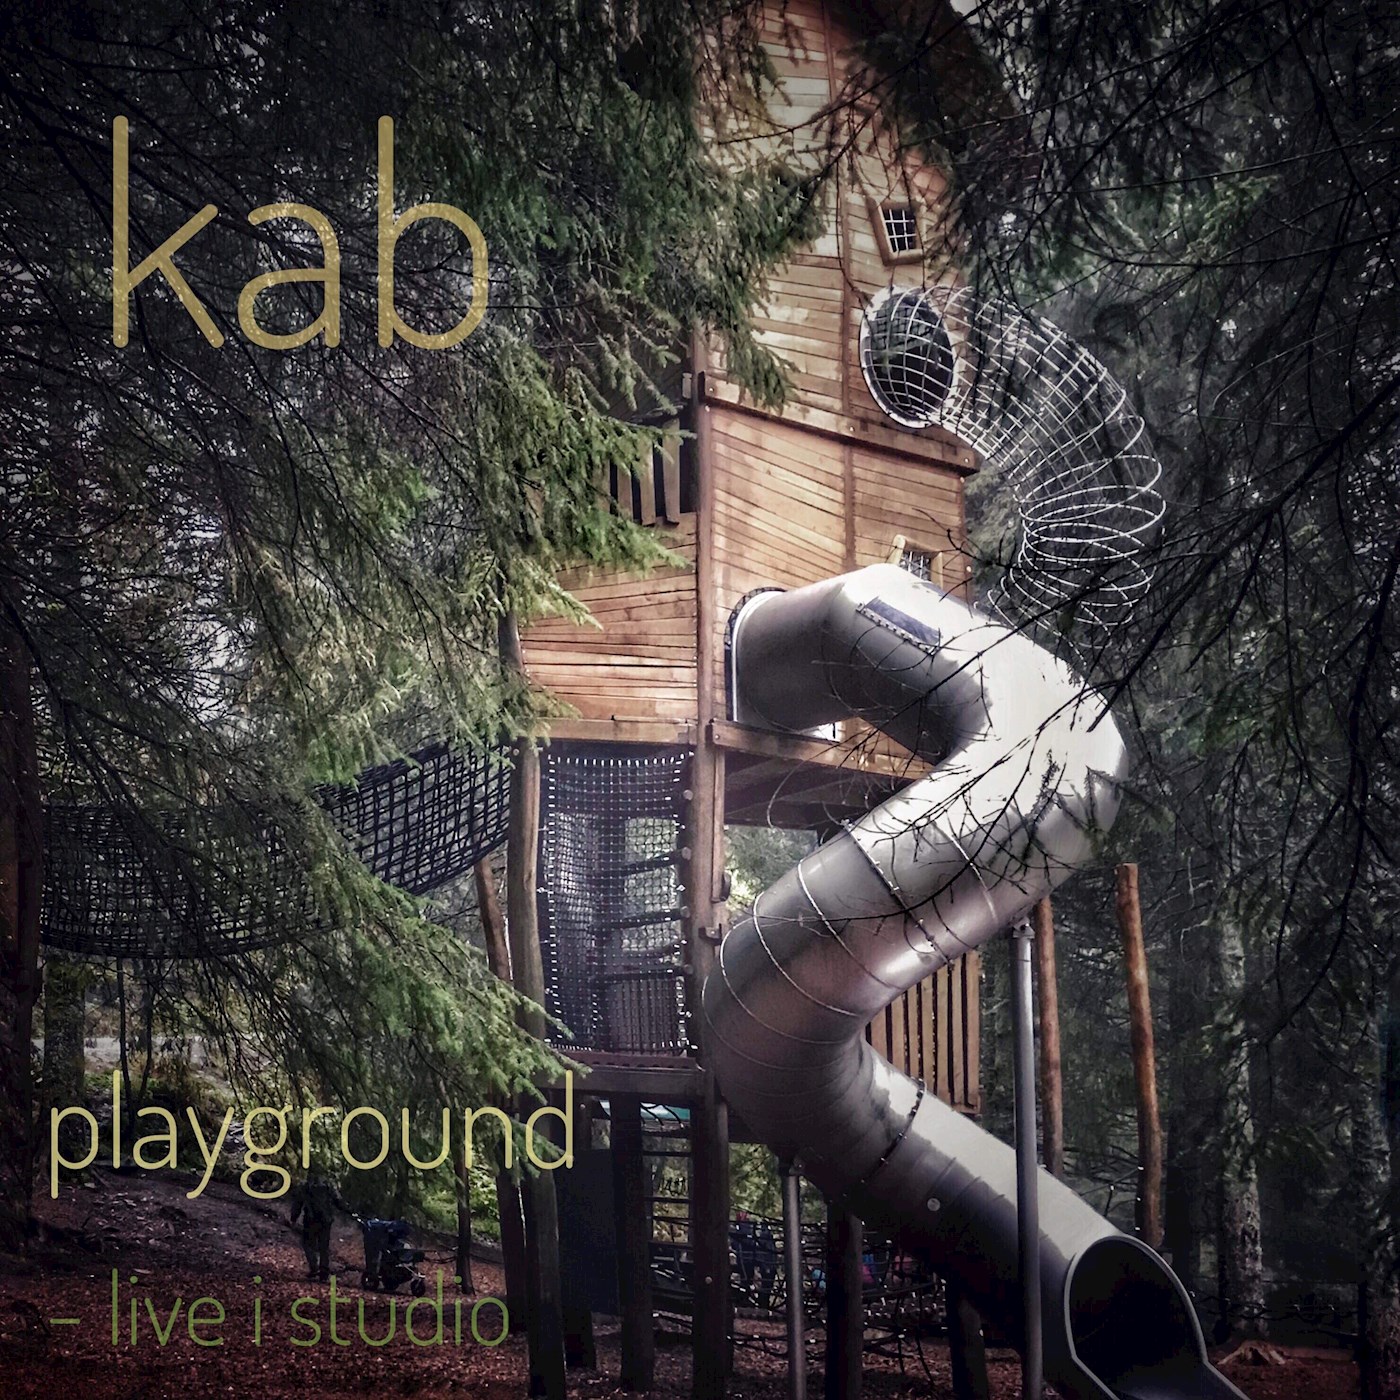 Playground - live i studio